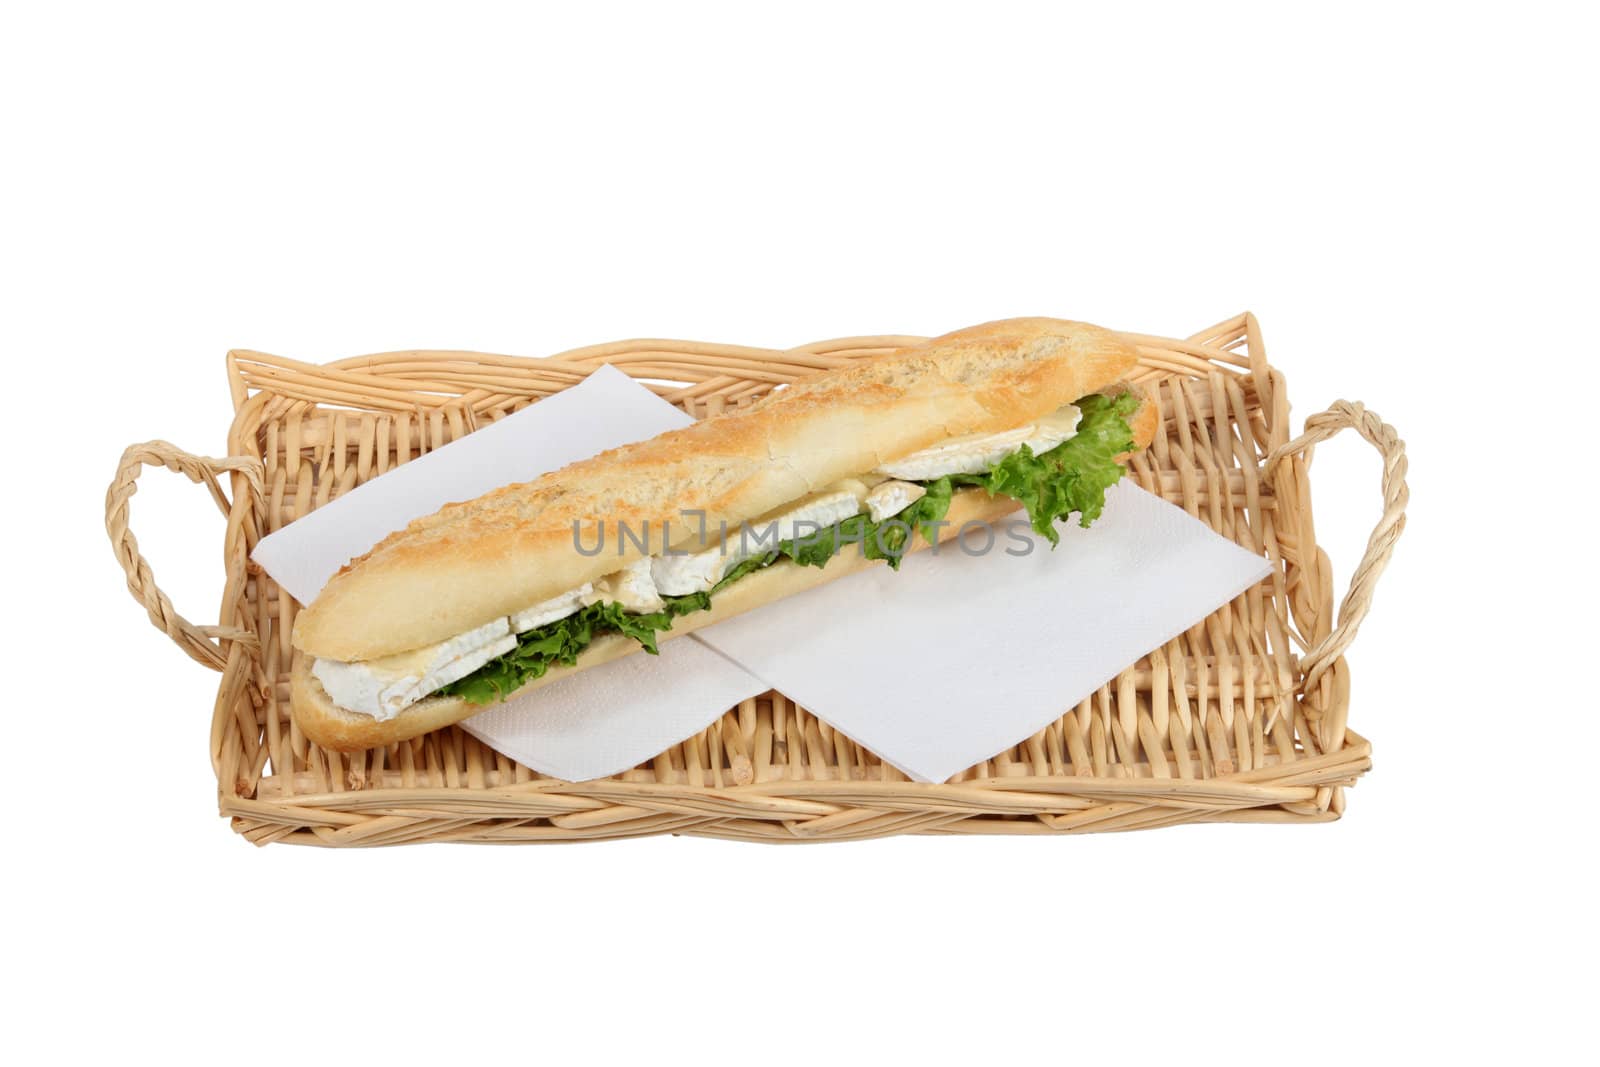 Sandwich on a wicker tray